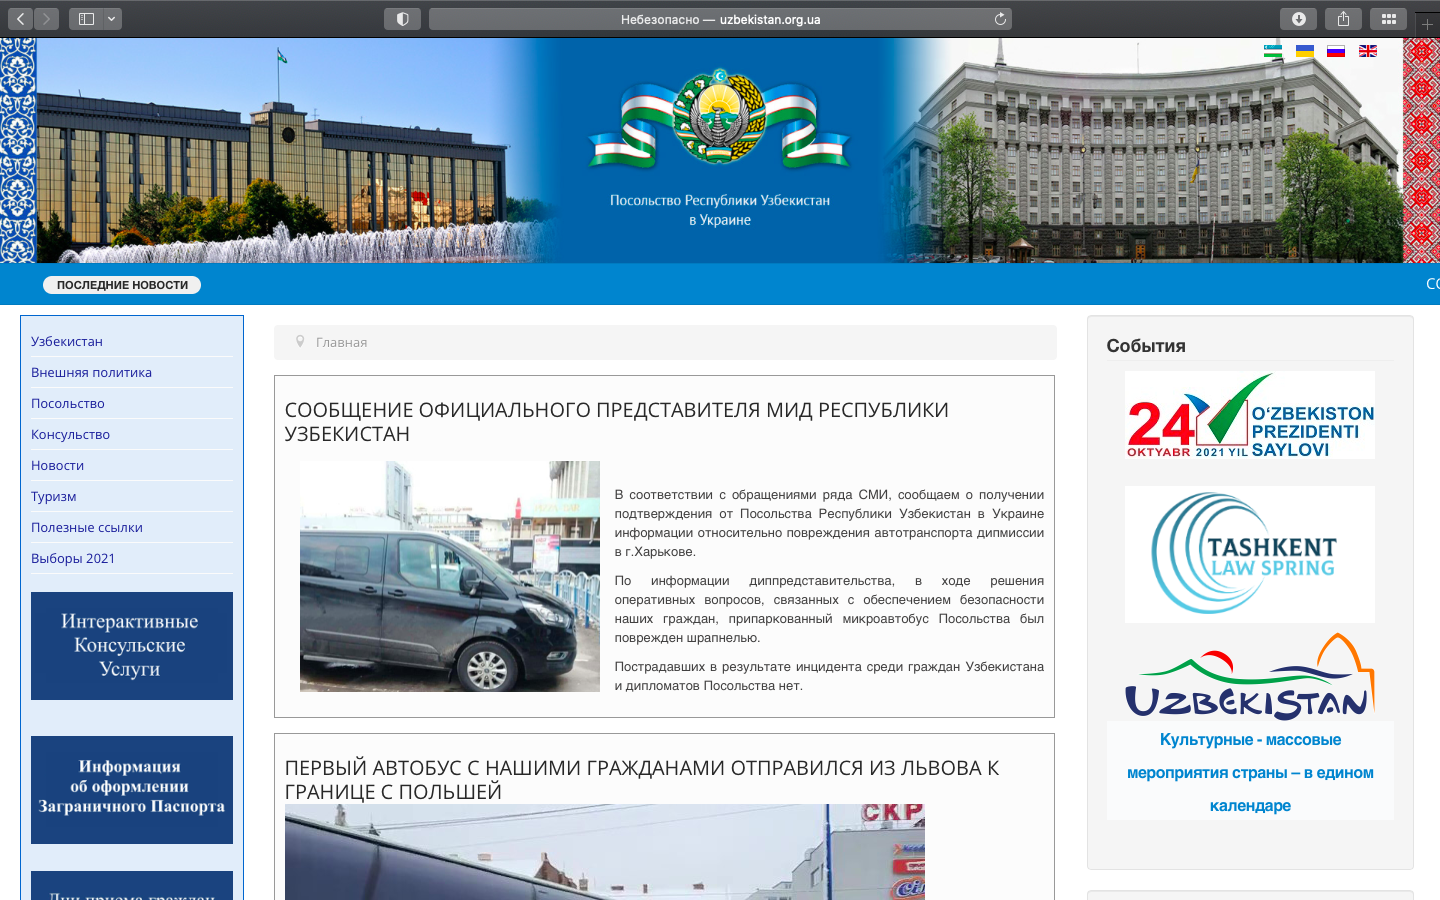 Скриншоты со взломом сайта Посольства Узбекистана в Украине оказались фейком